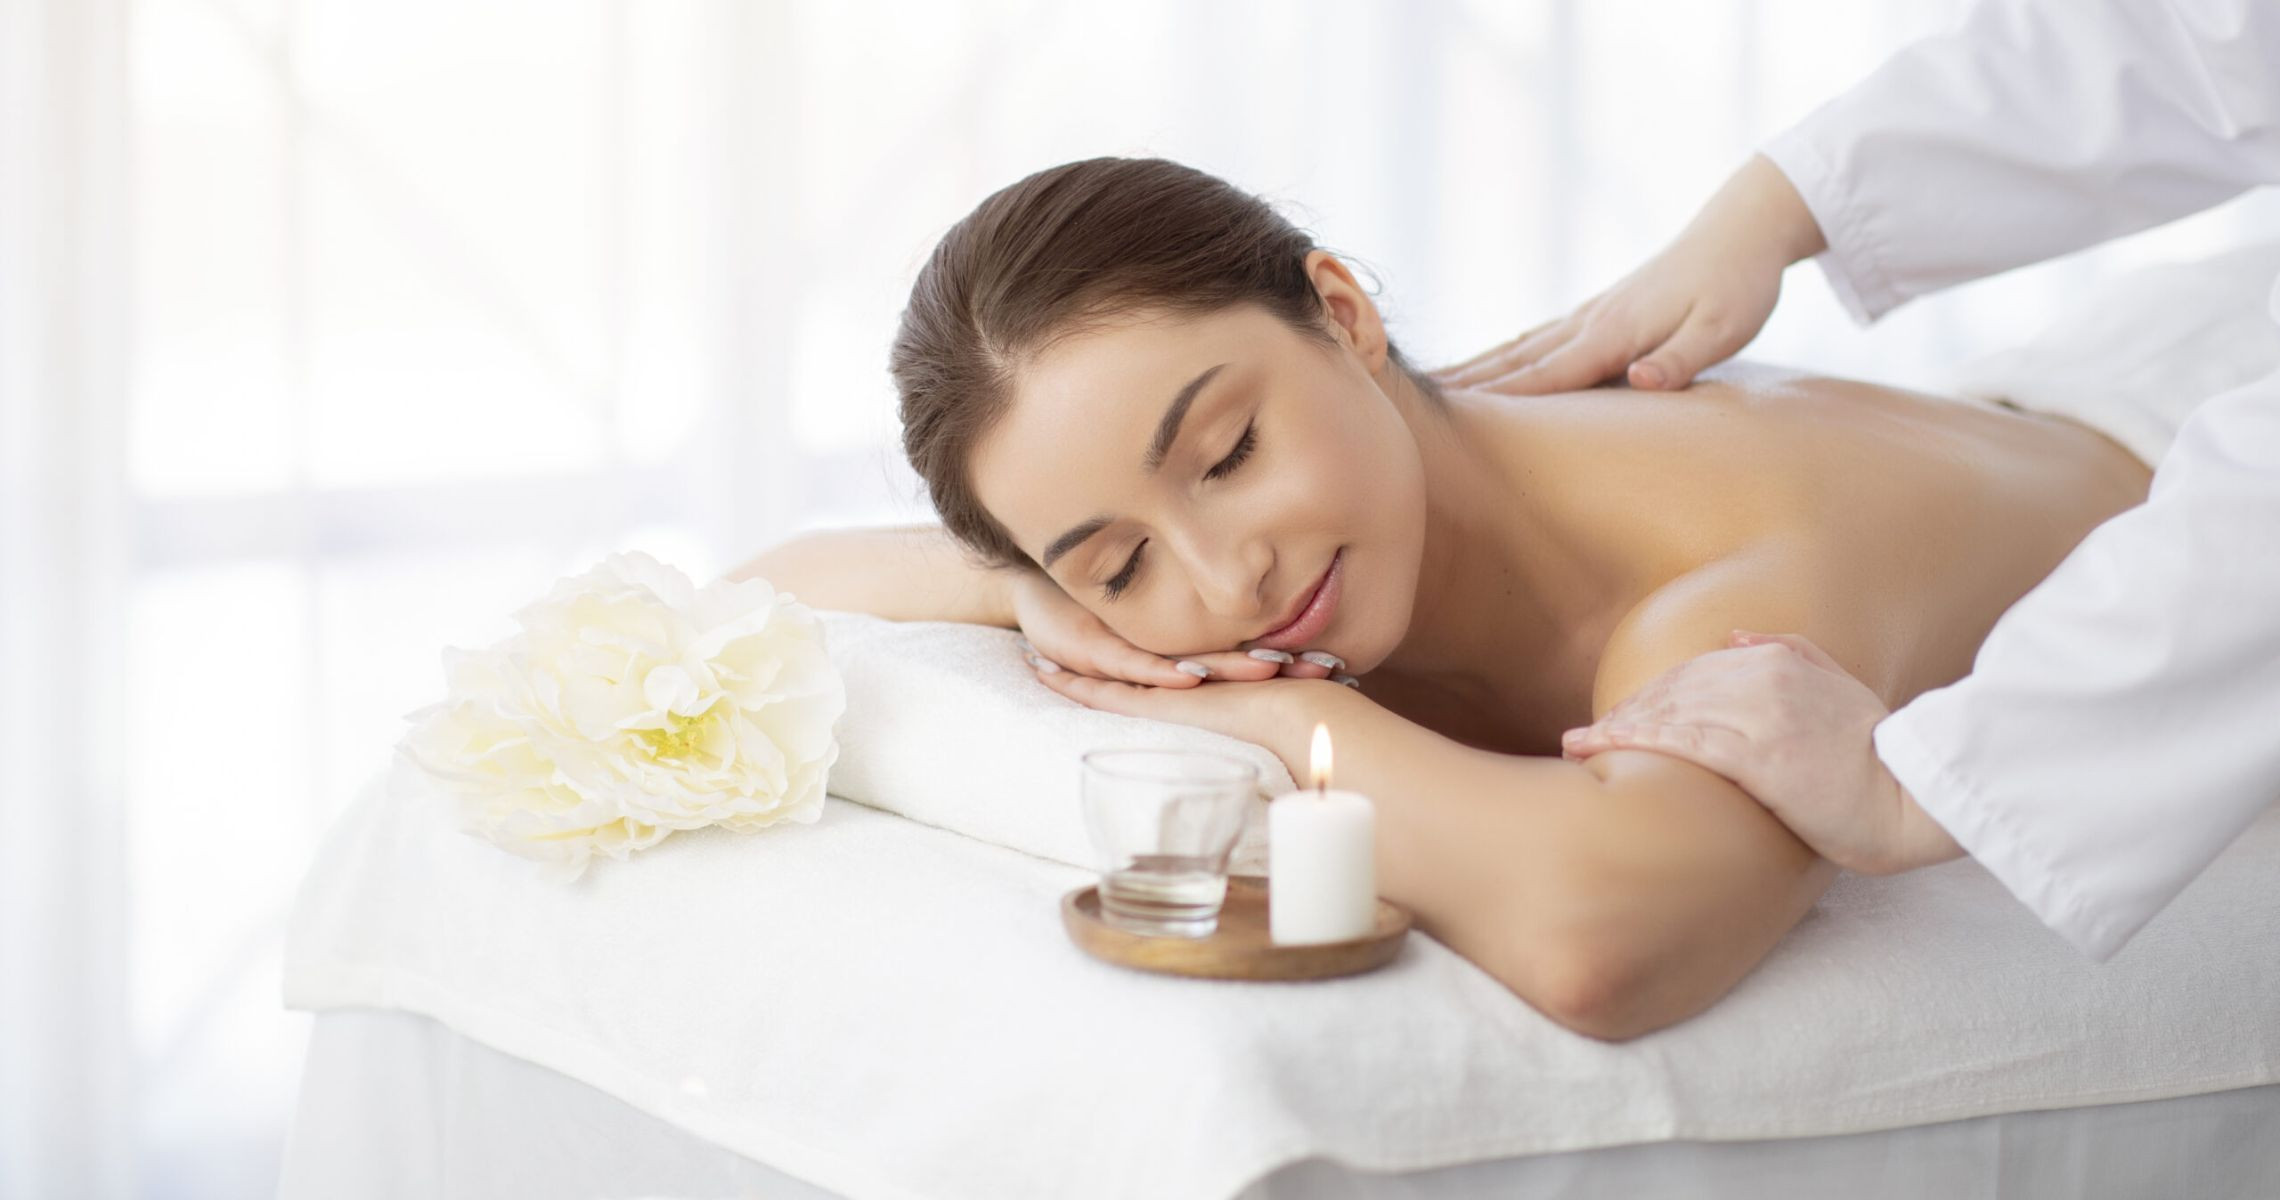 Massage trị liệu cổ vai gáy có tốt không và làm như thế nào?